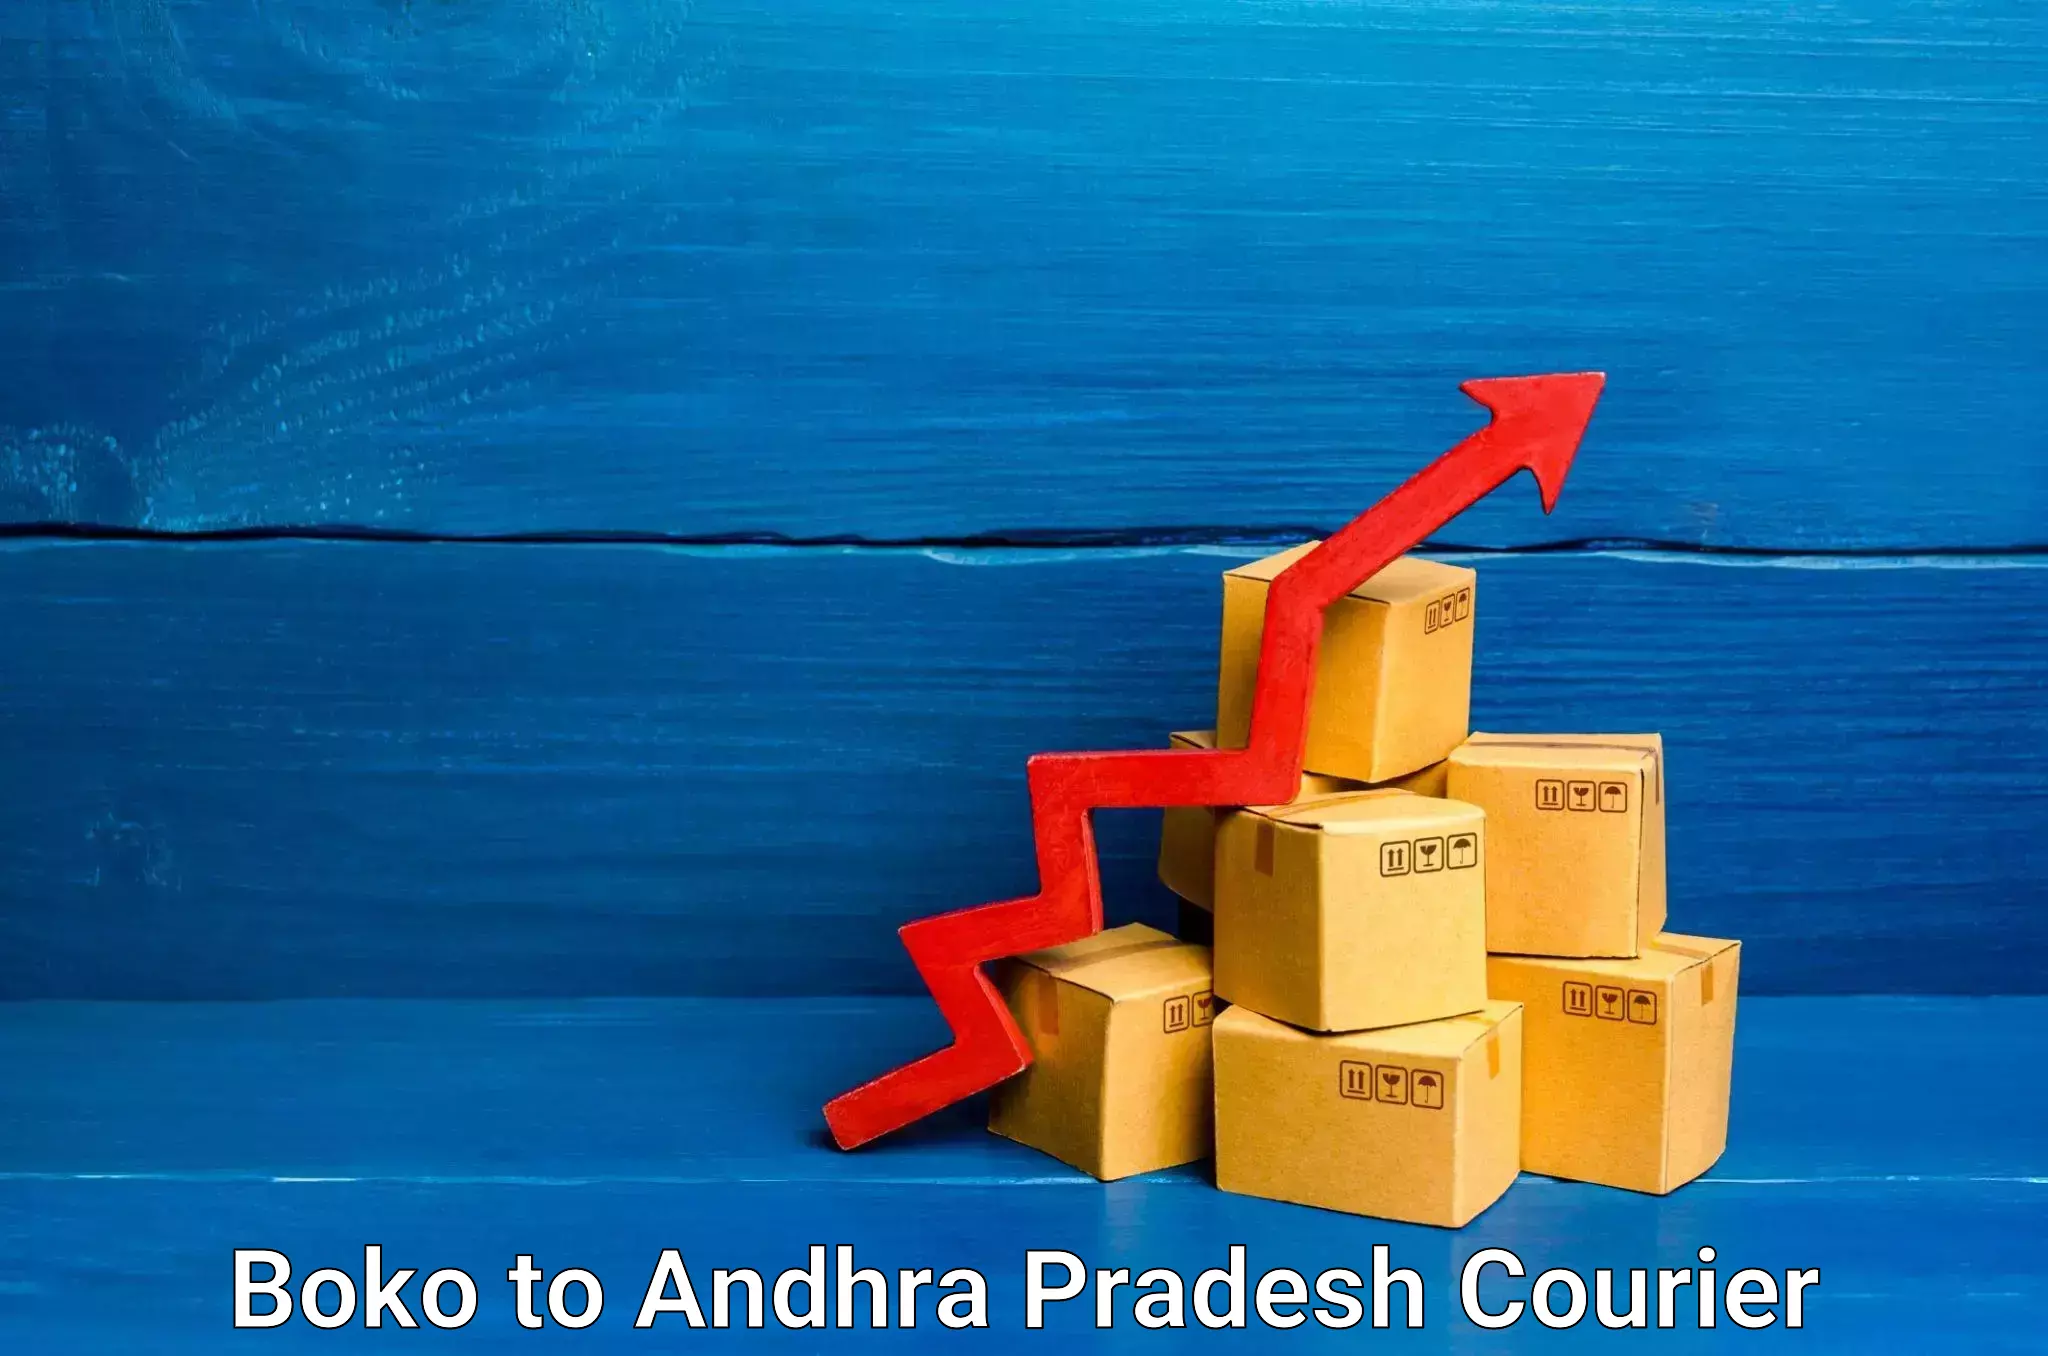 Global logistics network Boko to Andhra Pradesh